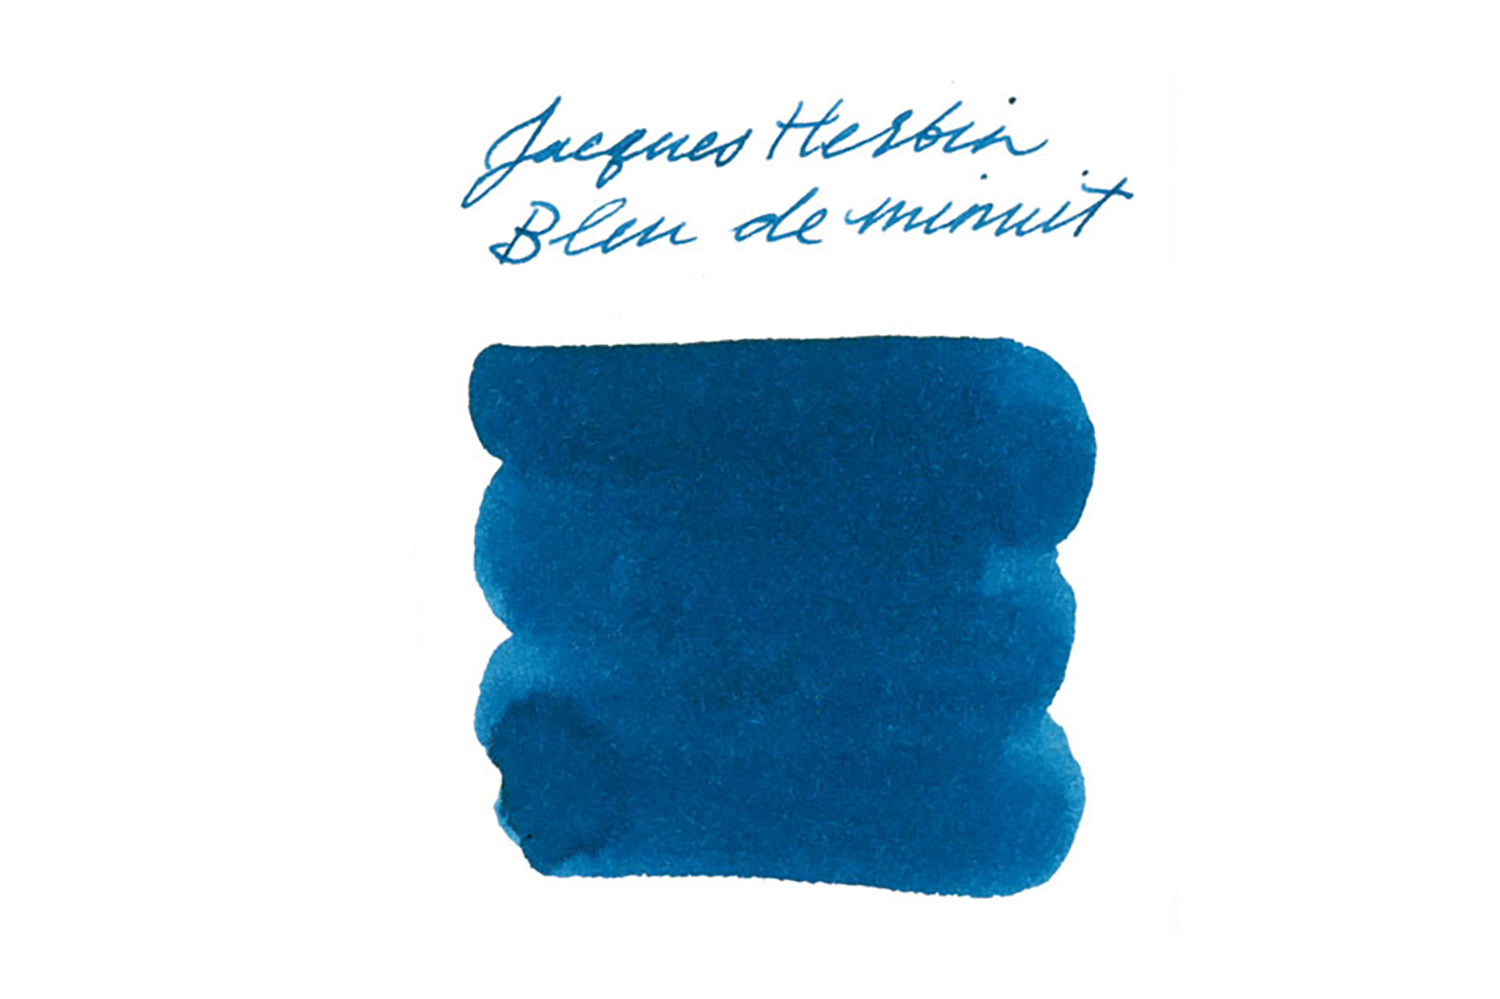 Jacques Herbin Bleu de Minuit - Ink Sample - The Goulet Pen Company